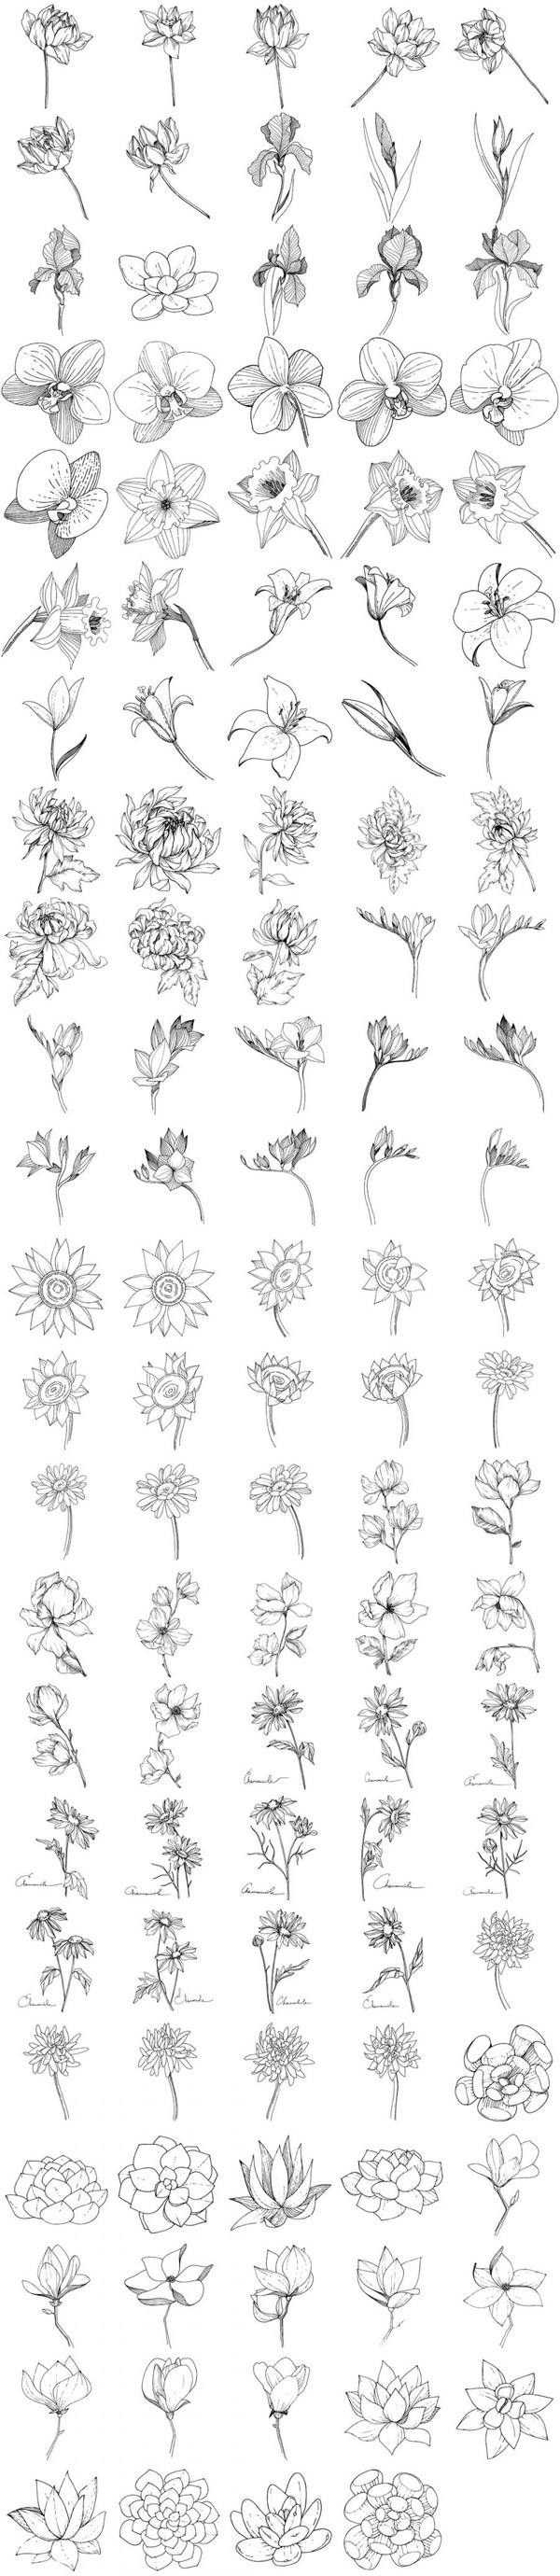 144款植物白描速写矢量素材,植物白描,花朵,叶子,线描,速写,矢量素材